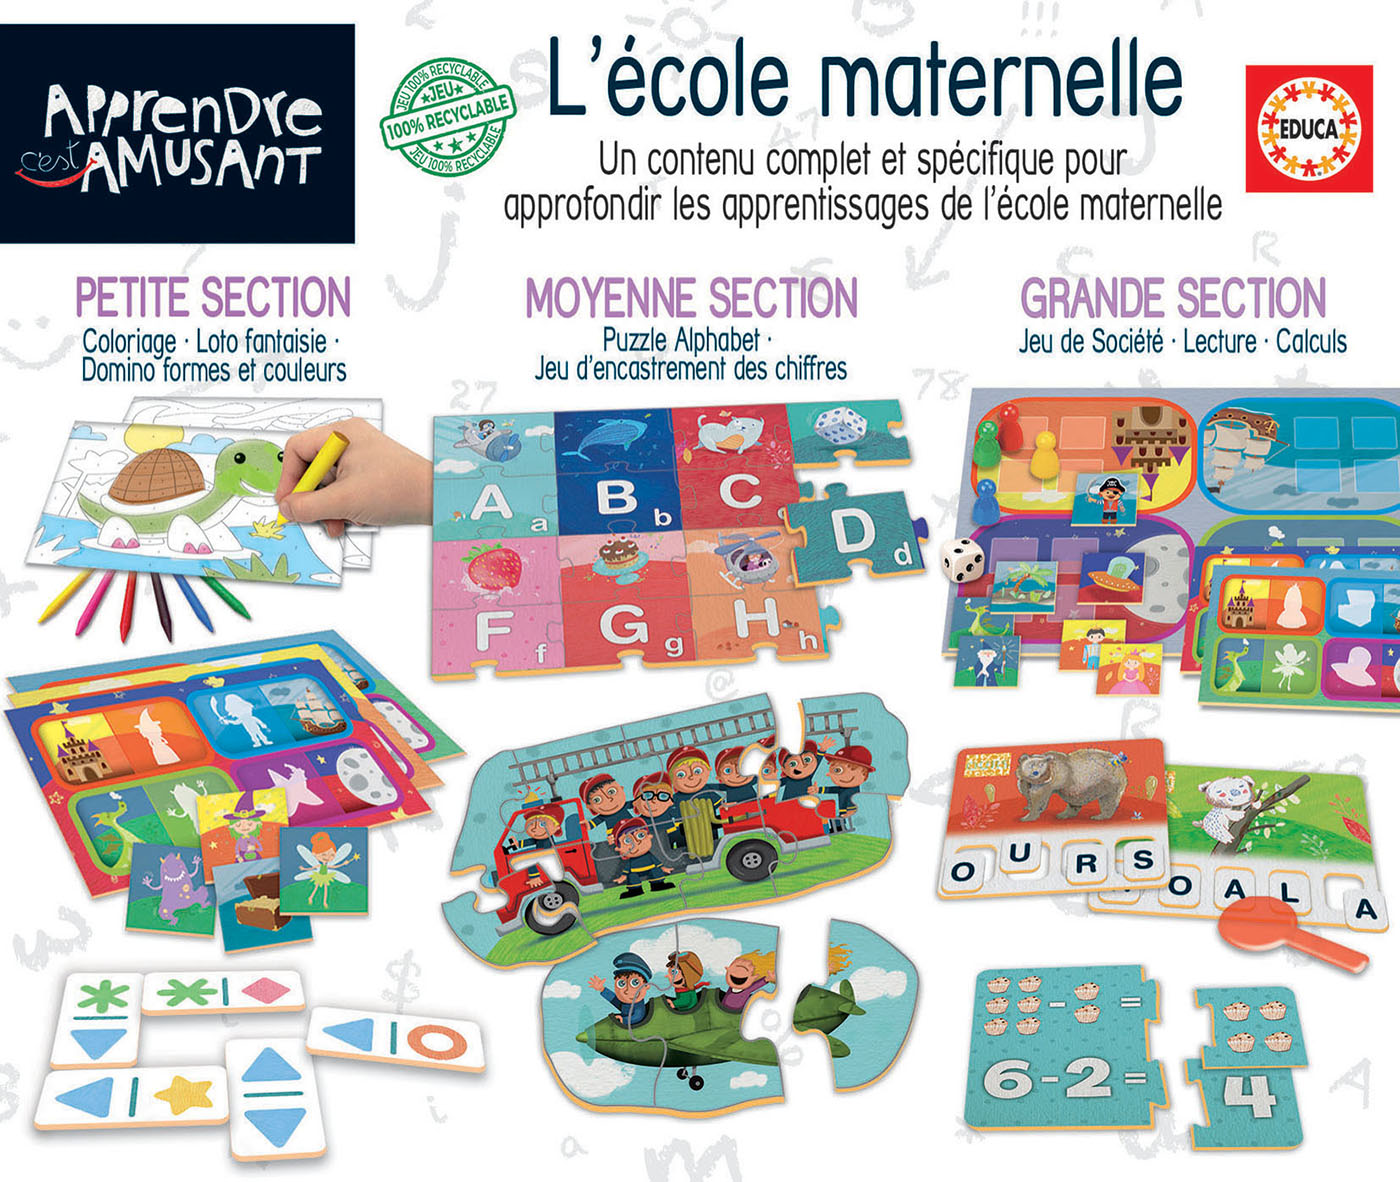 Kit Ecole Maternelle Apprendre C'est Amusant - Educa Borras